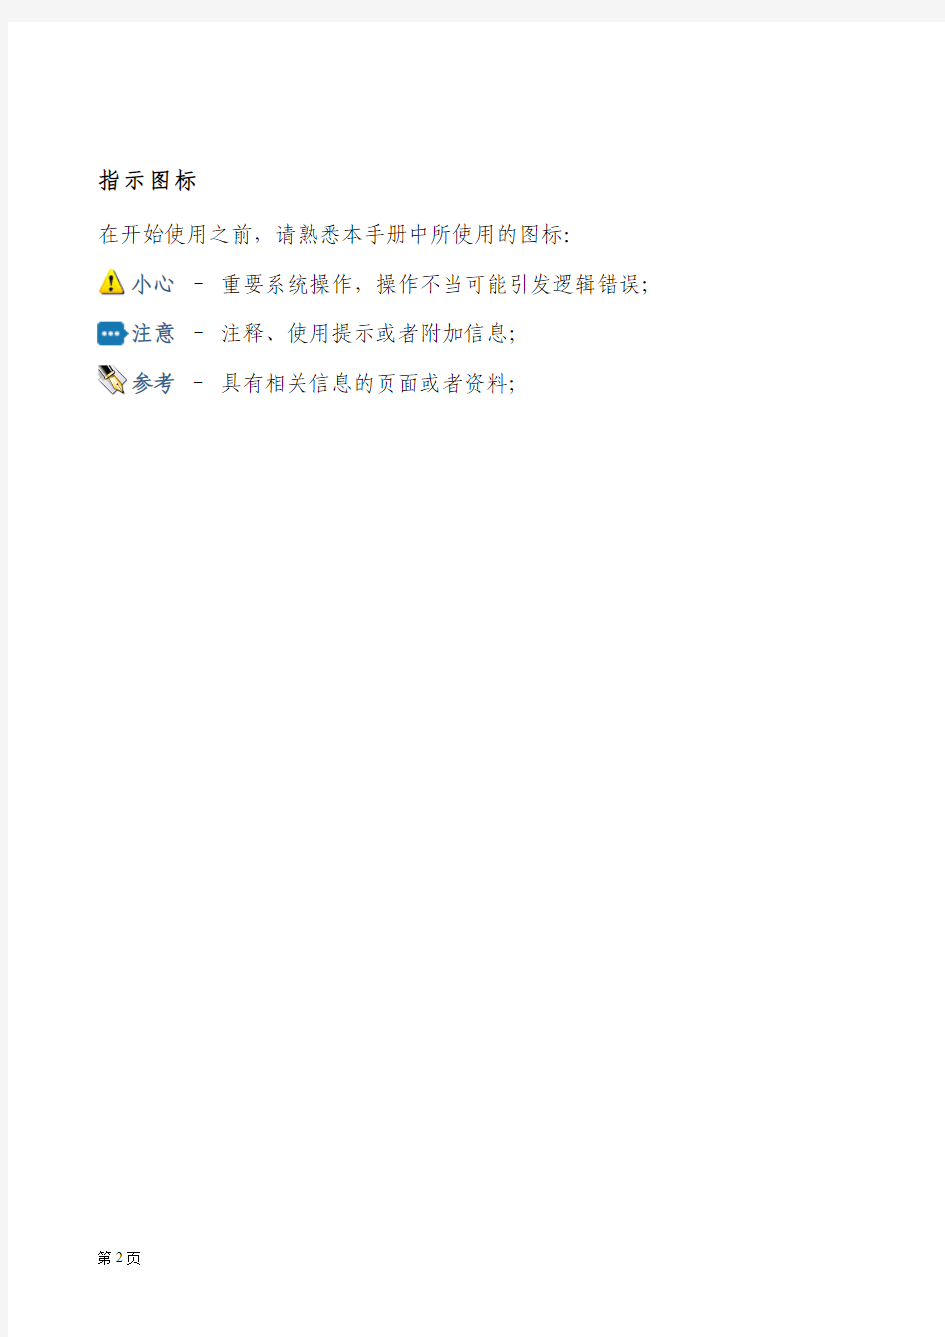 北京市昌平区安全生产监管信息平台隐患自查自报系统企业门户用户使用手册(1)